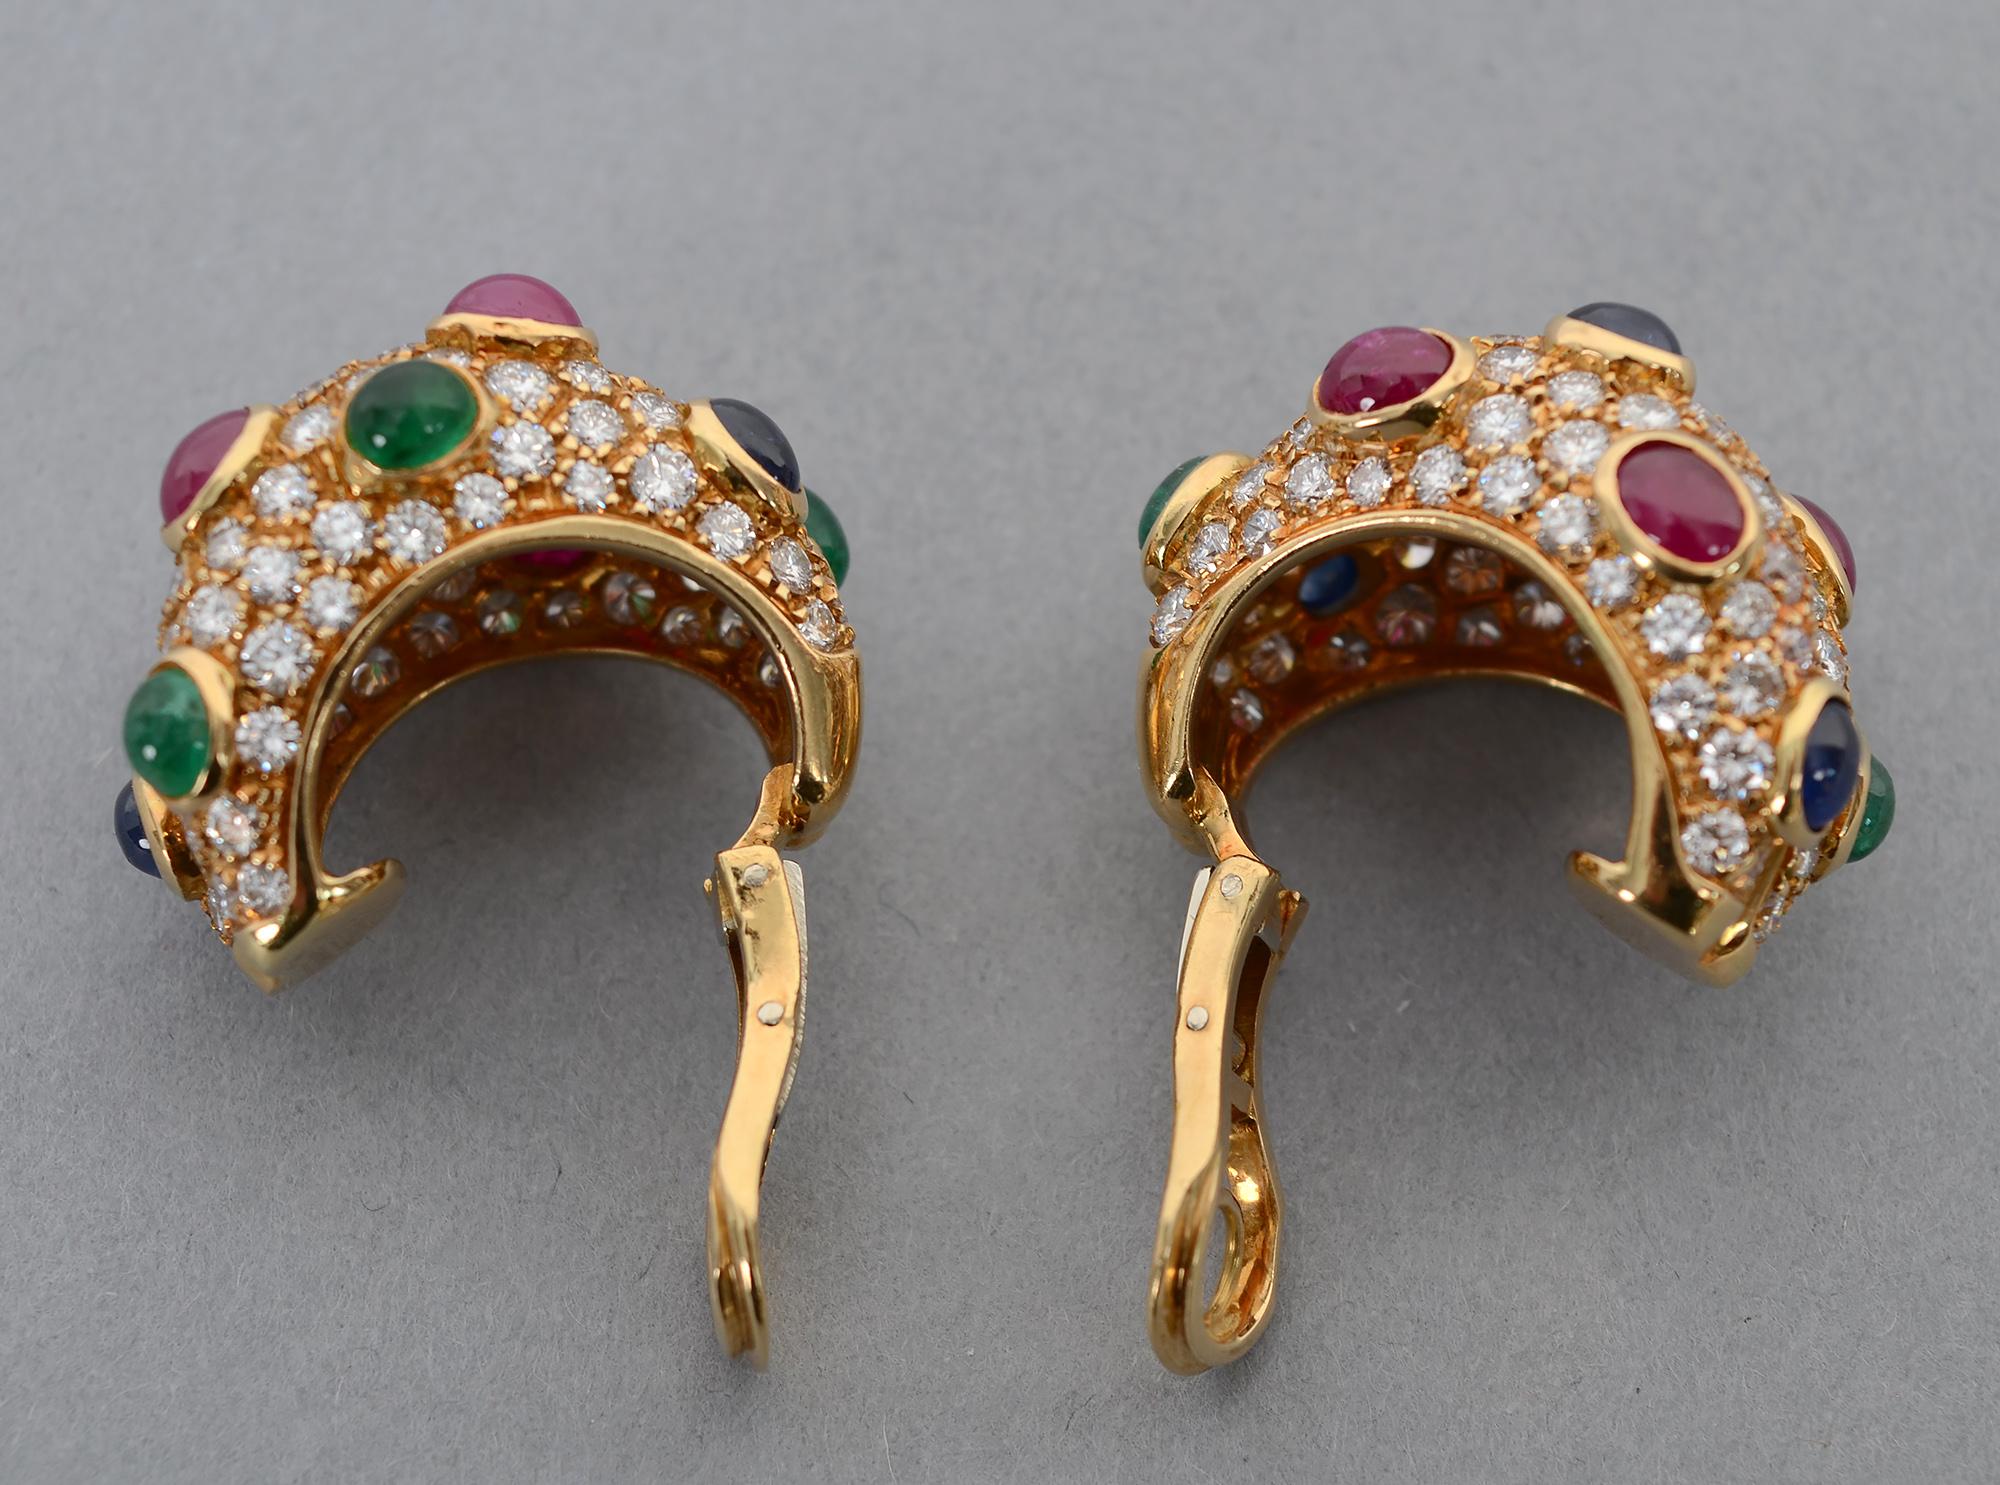 Modern Diamond Half Hoop Earrings with Rubies, Sapphires and Emeralds